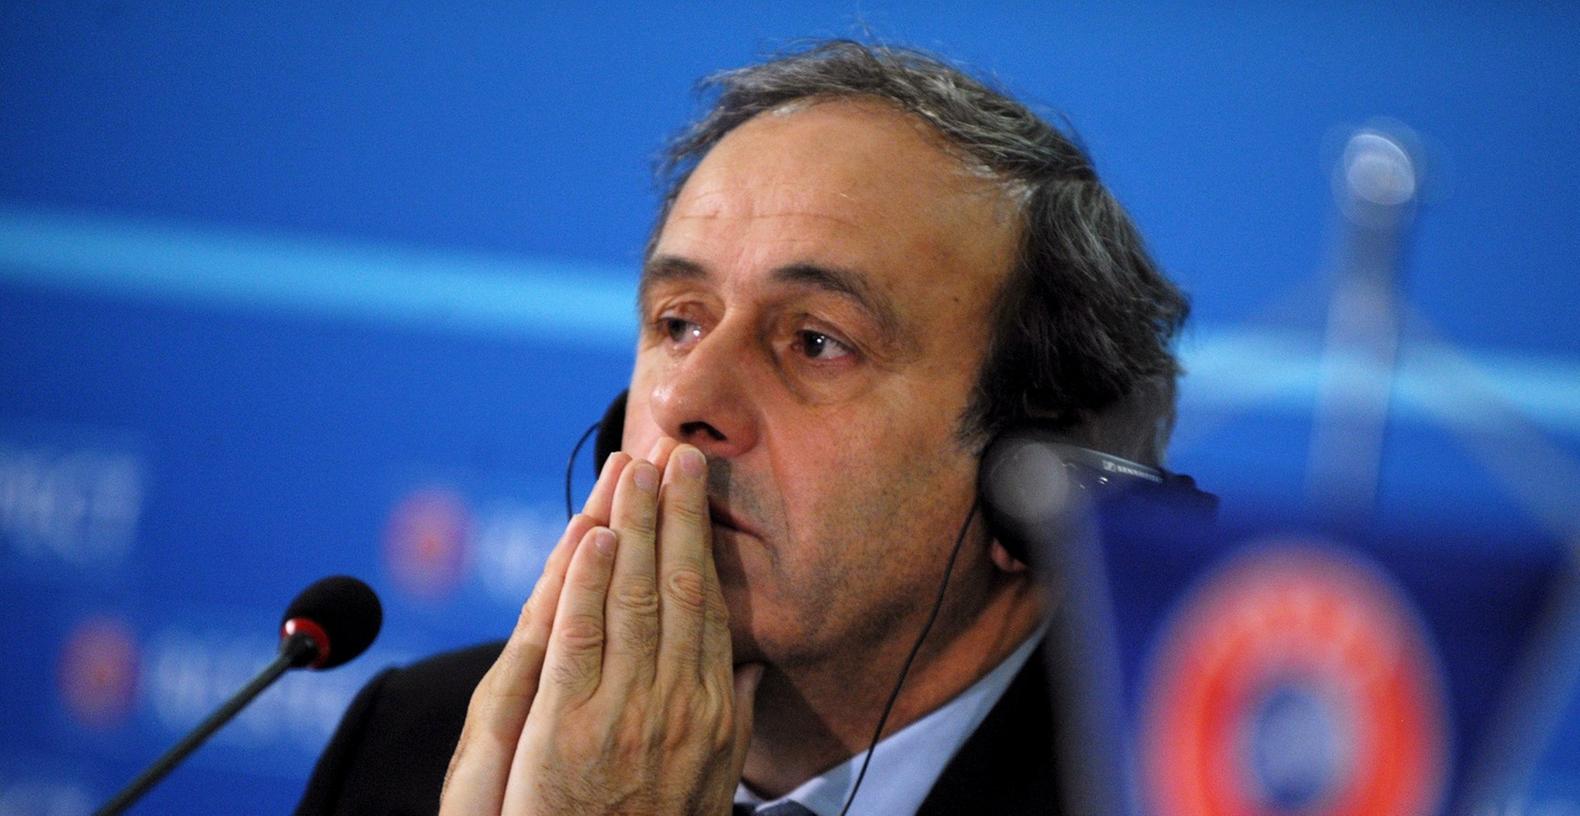 Auch UEFA-Präsident Michel Platini wurde für 90 Tage suspendiert.